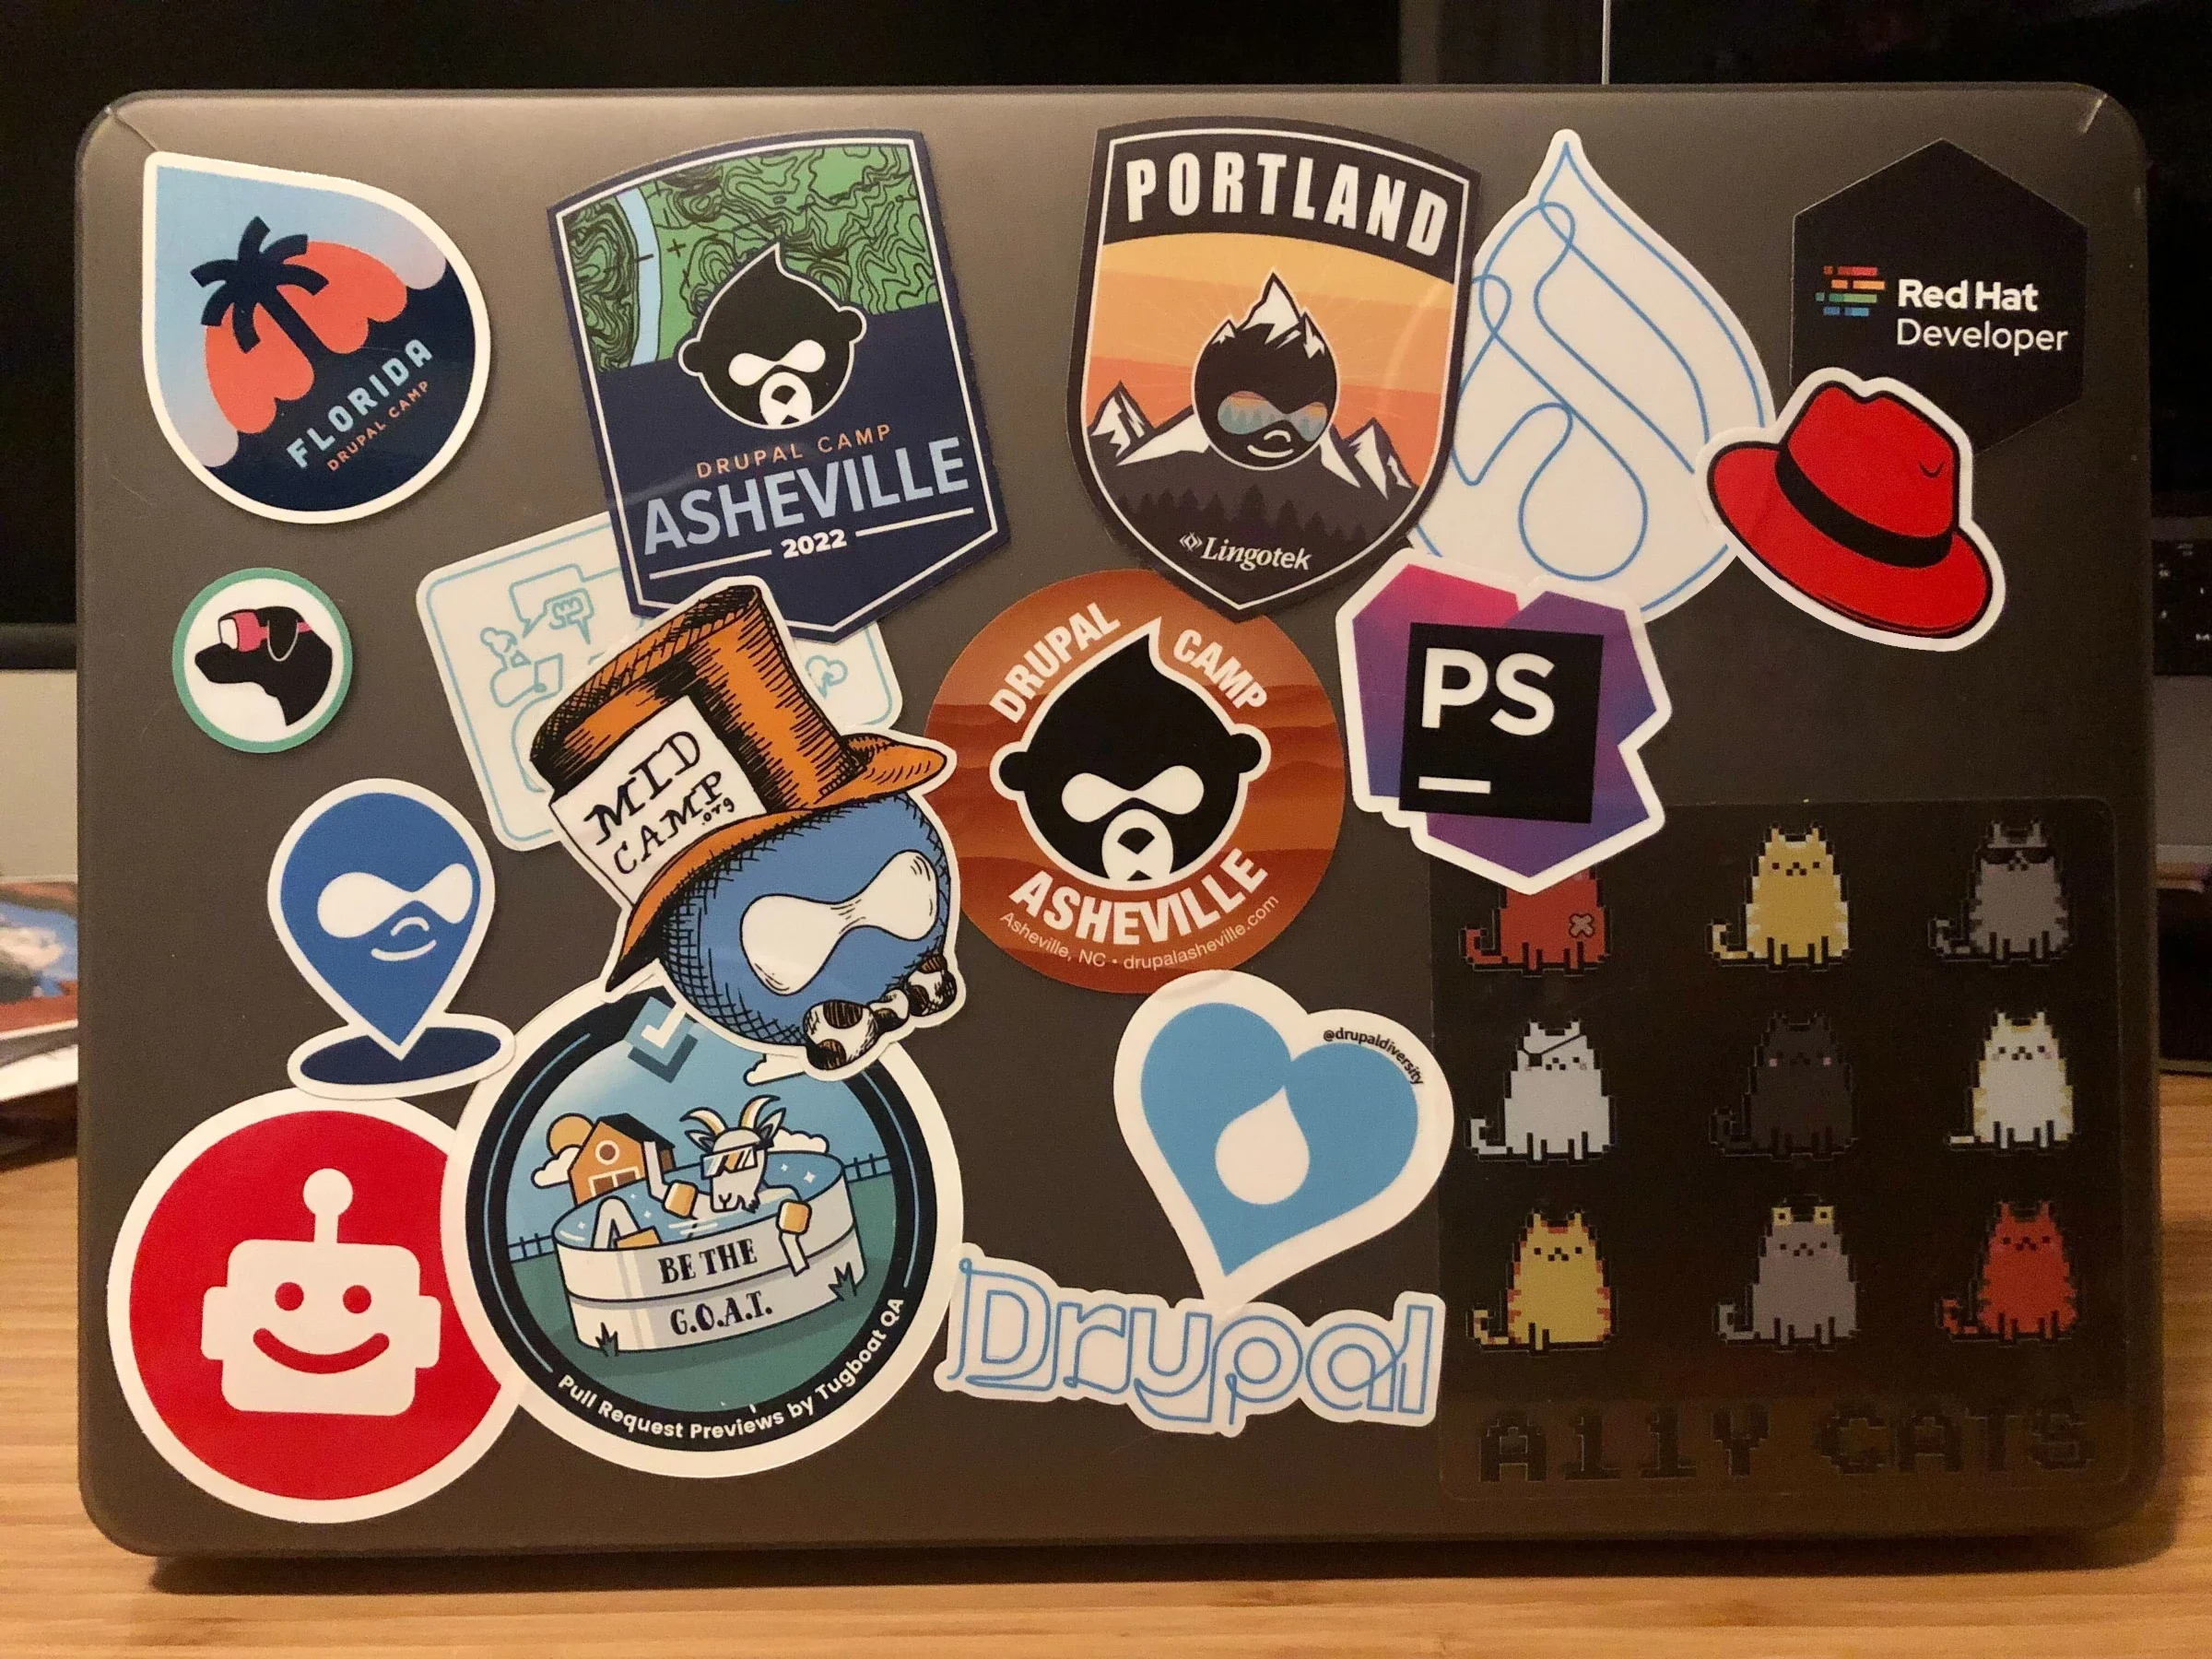 April's laptop features several Drupal stickers.